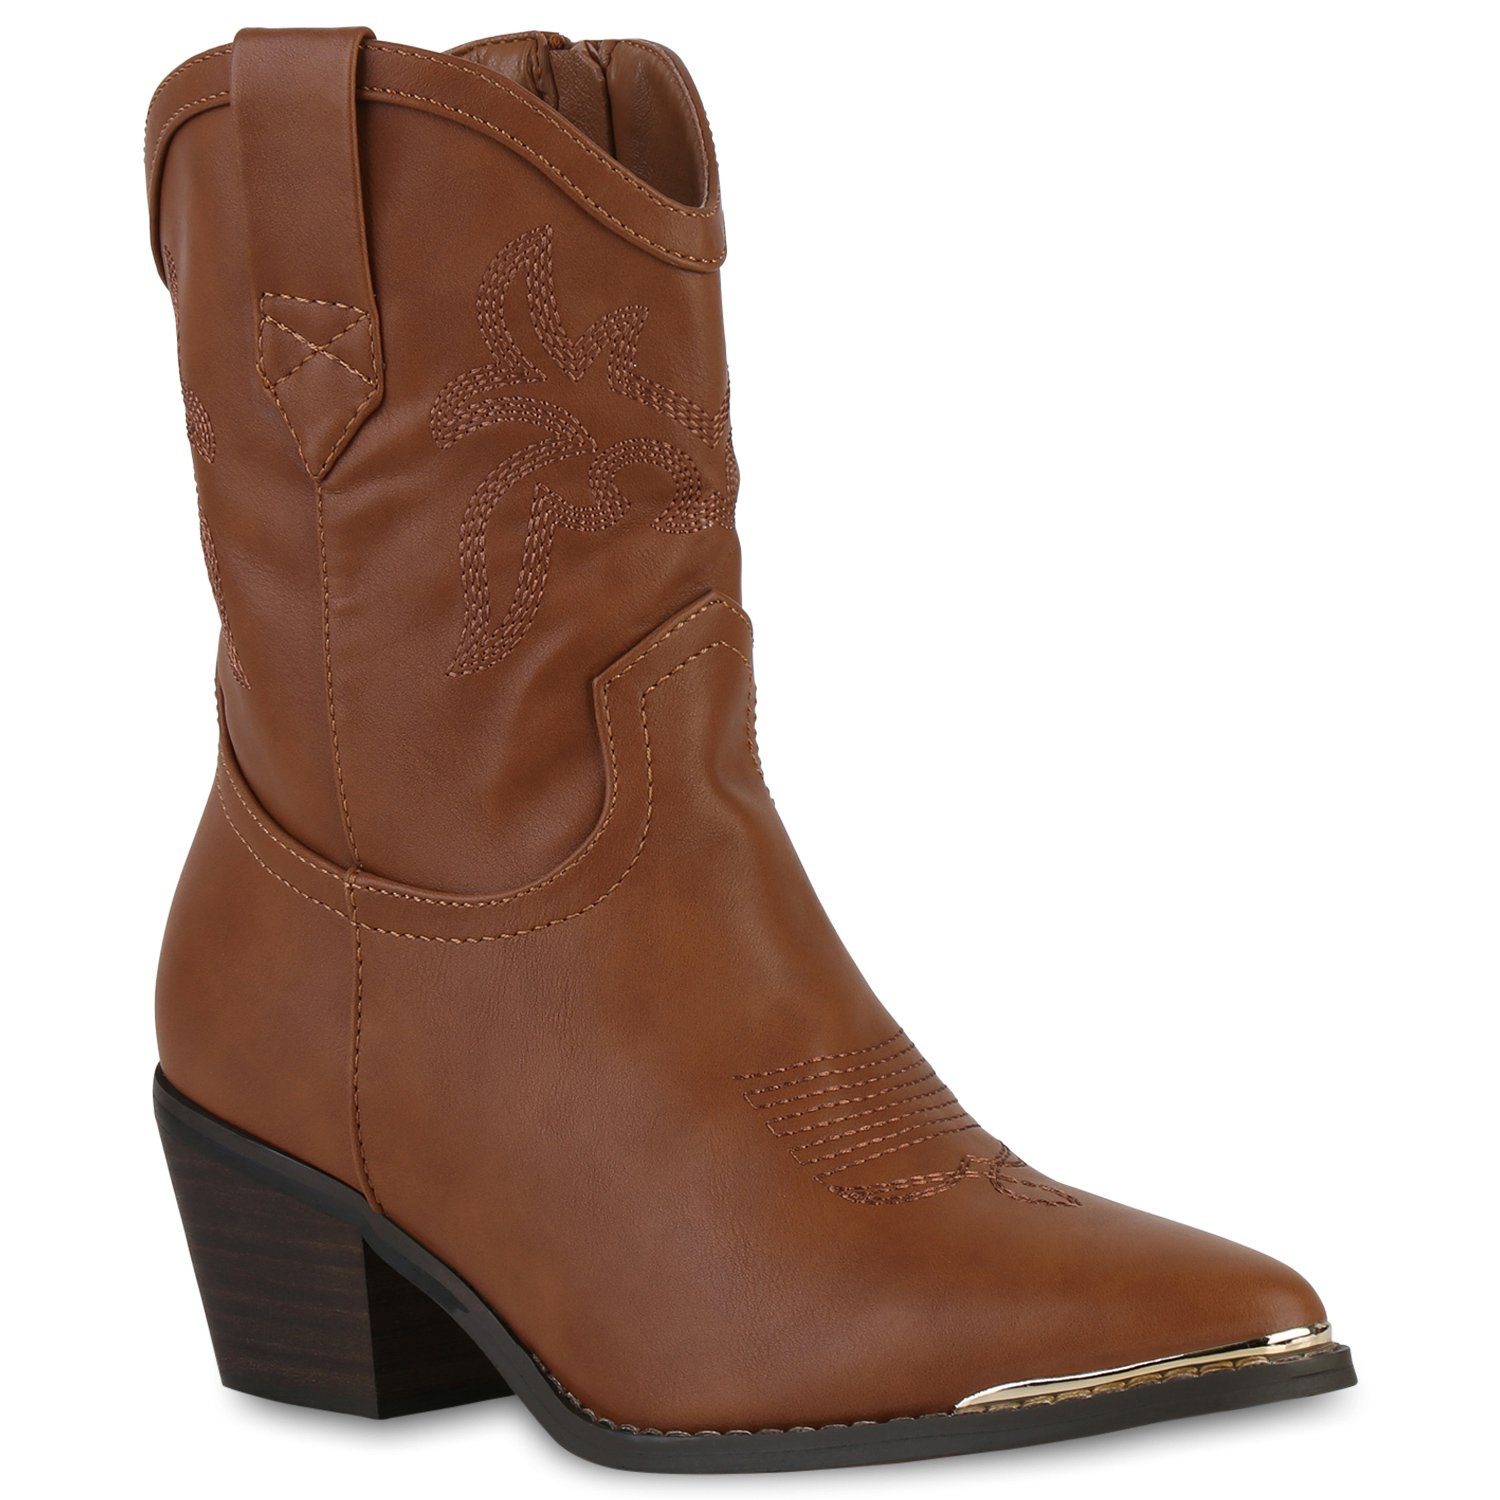 VAN HILL »839934« Cowboy Boots online kaufen | OTTO